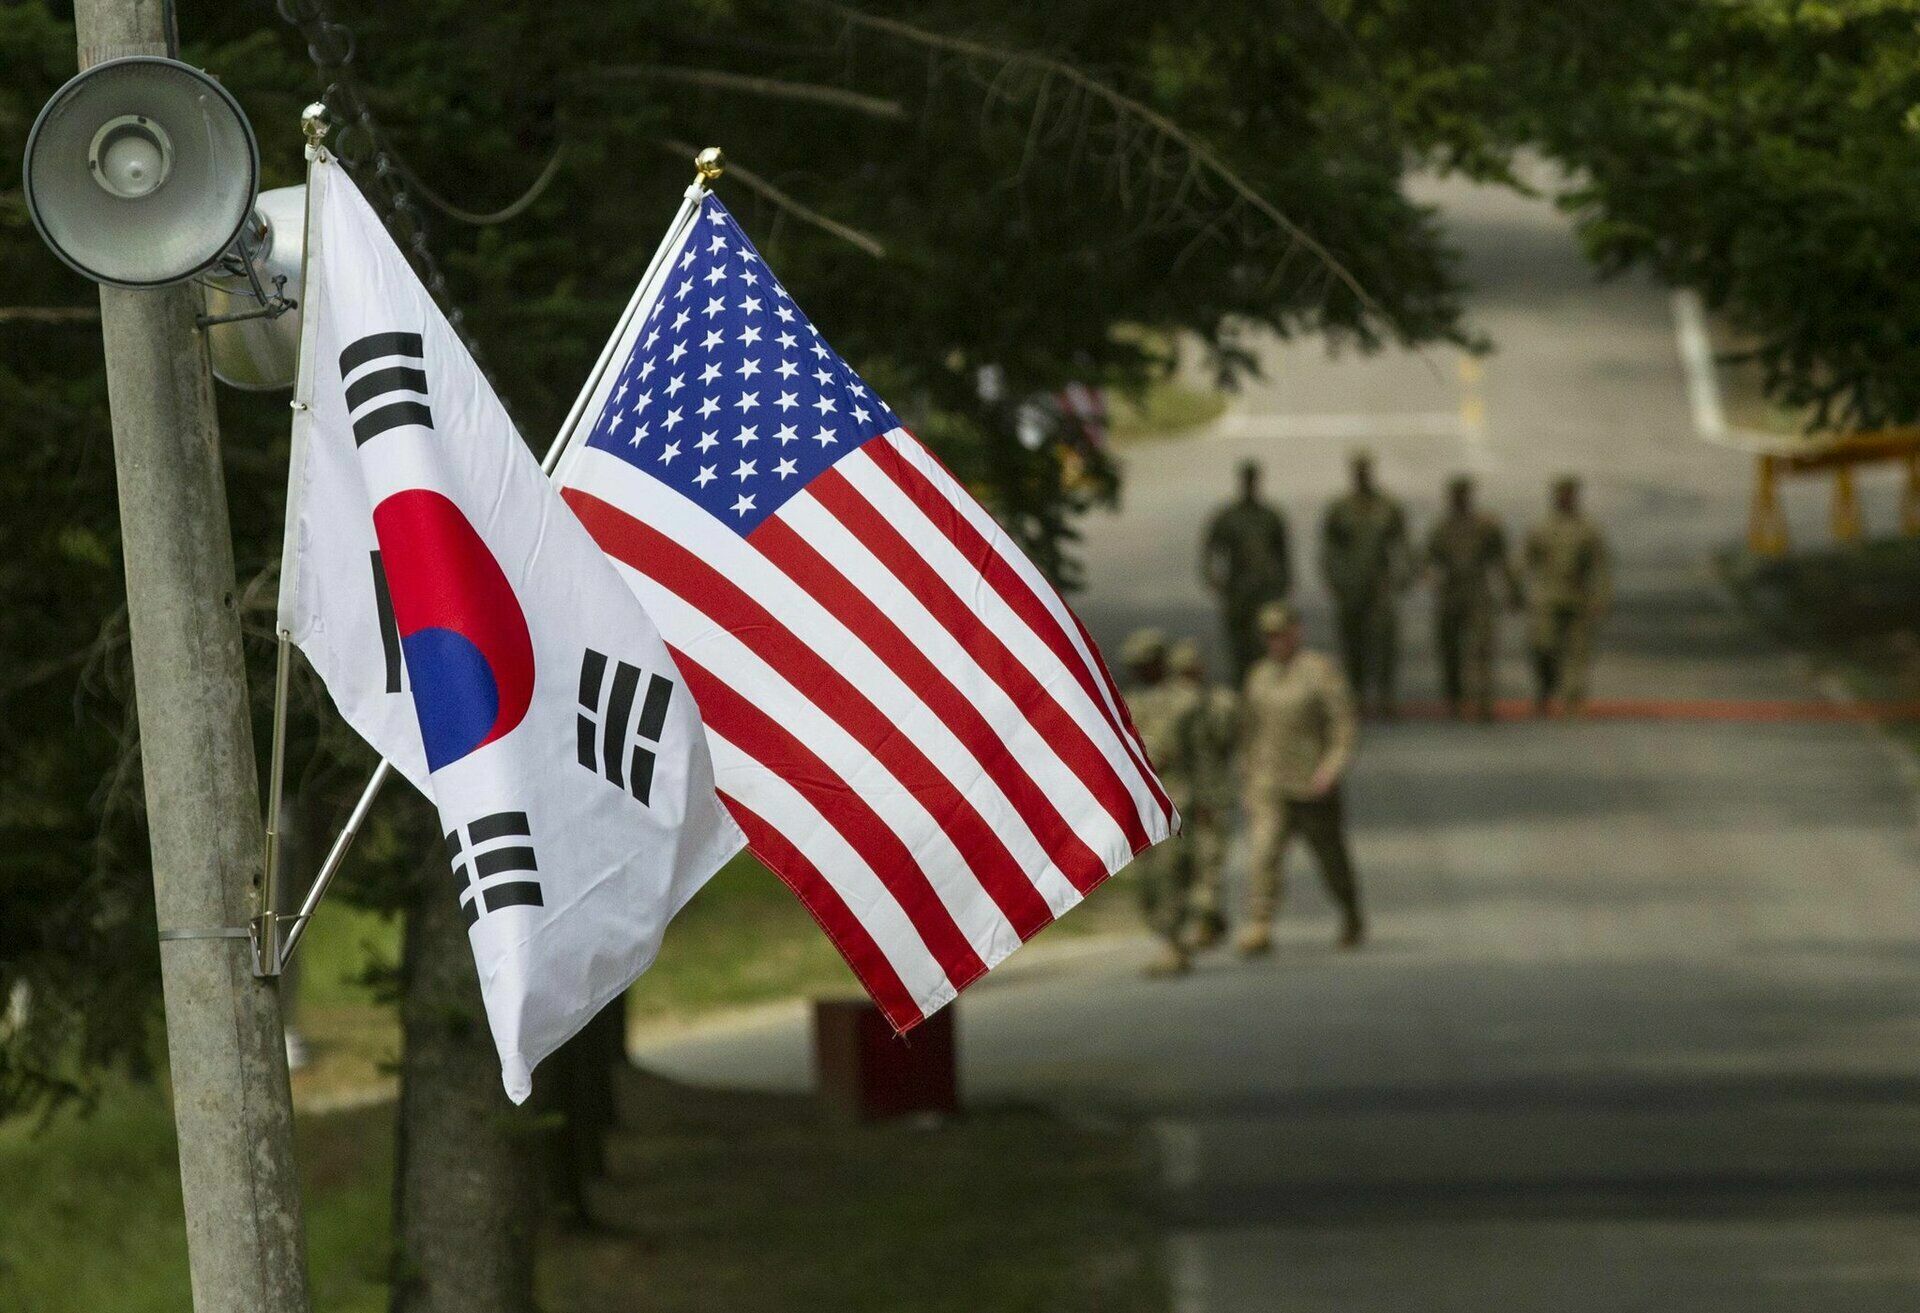 США и Южная Корея начали крупнейшие в истории совместные учения ВВС